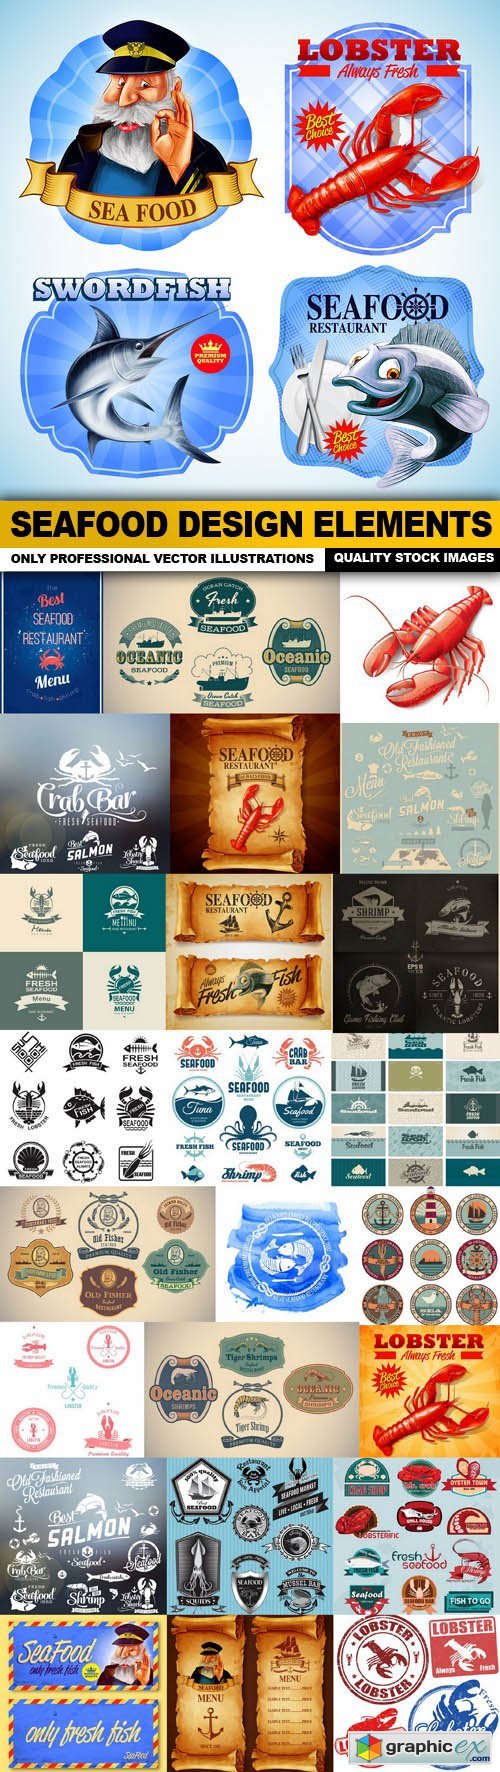 Seafood Design Elements